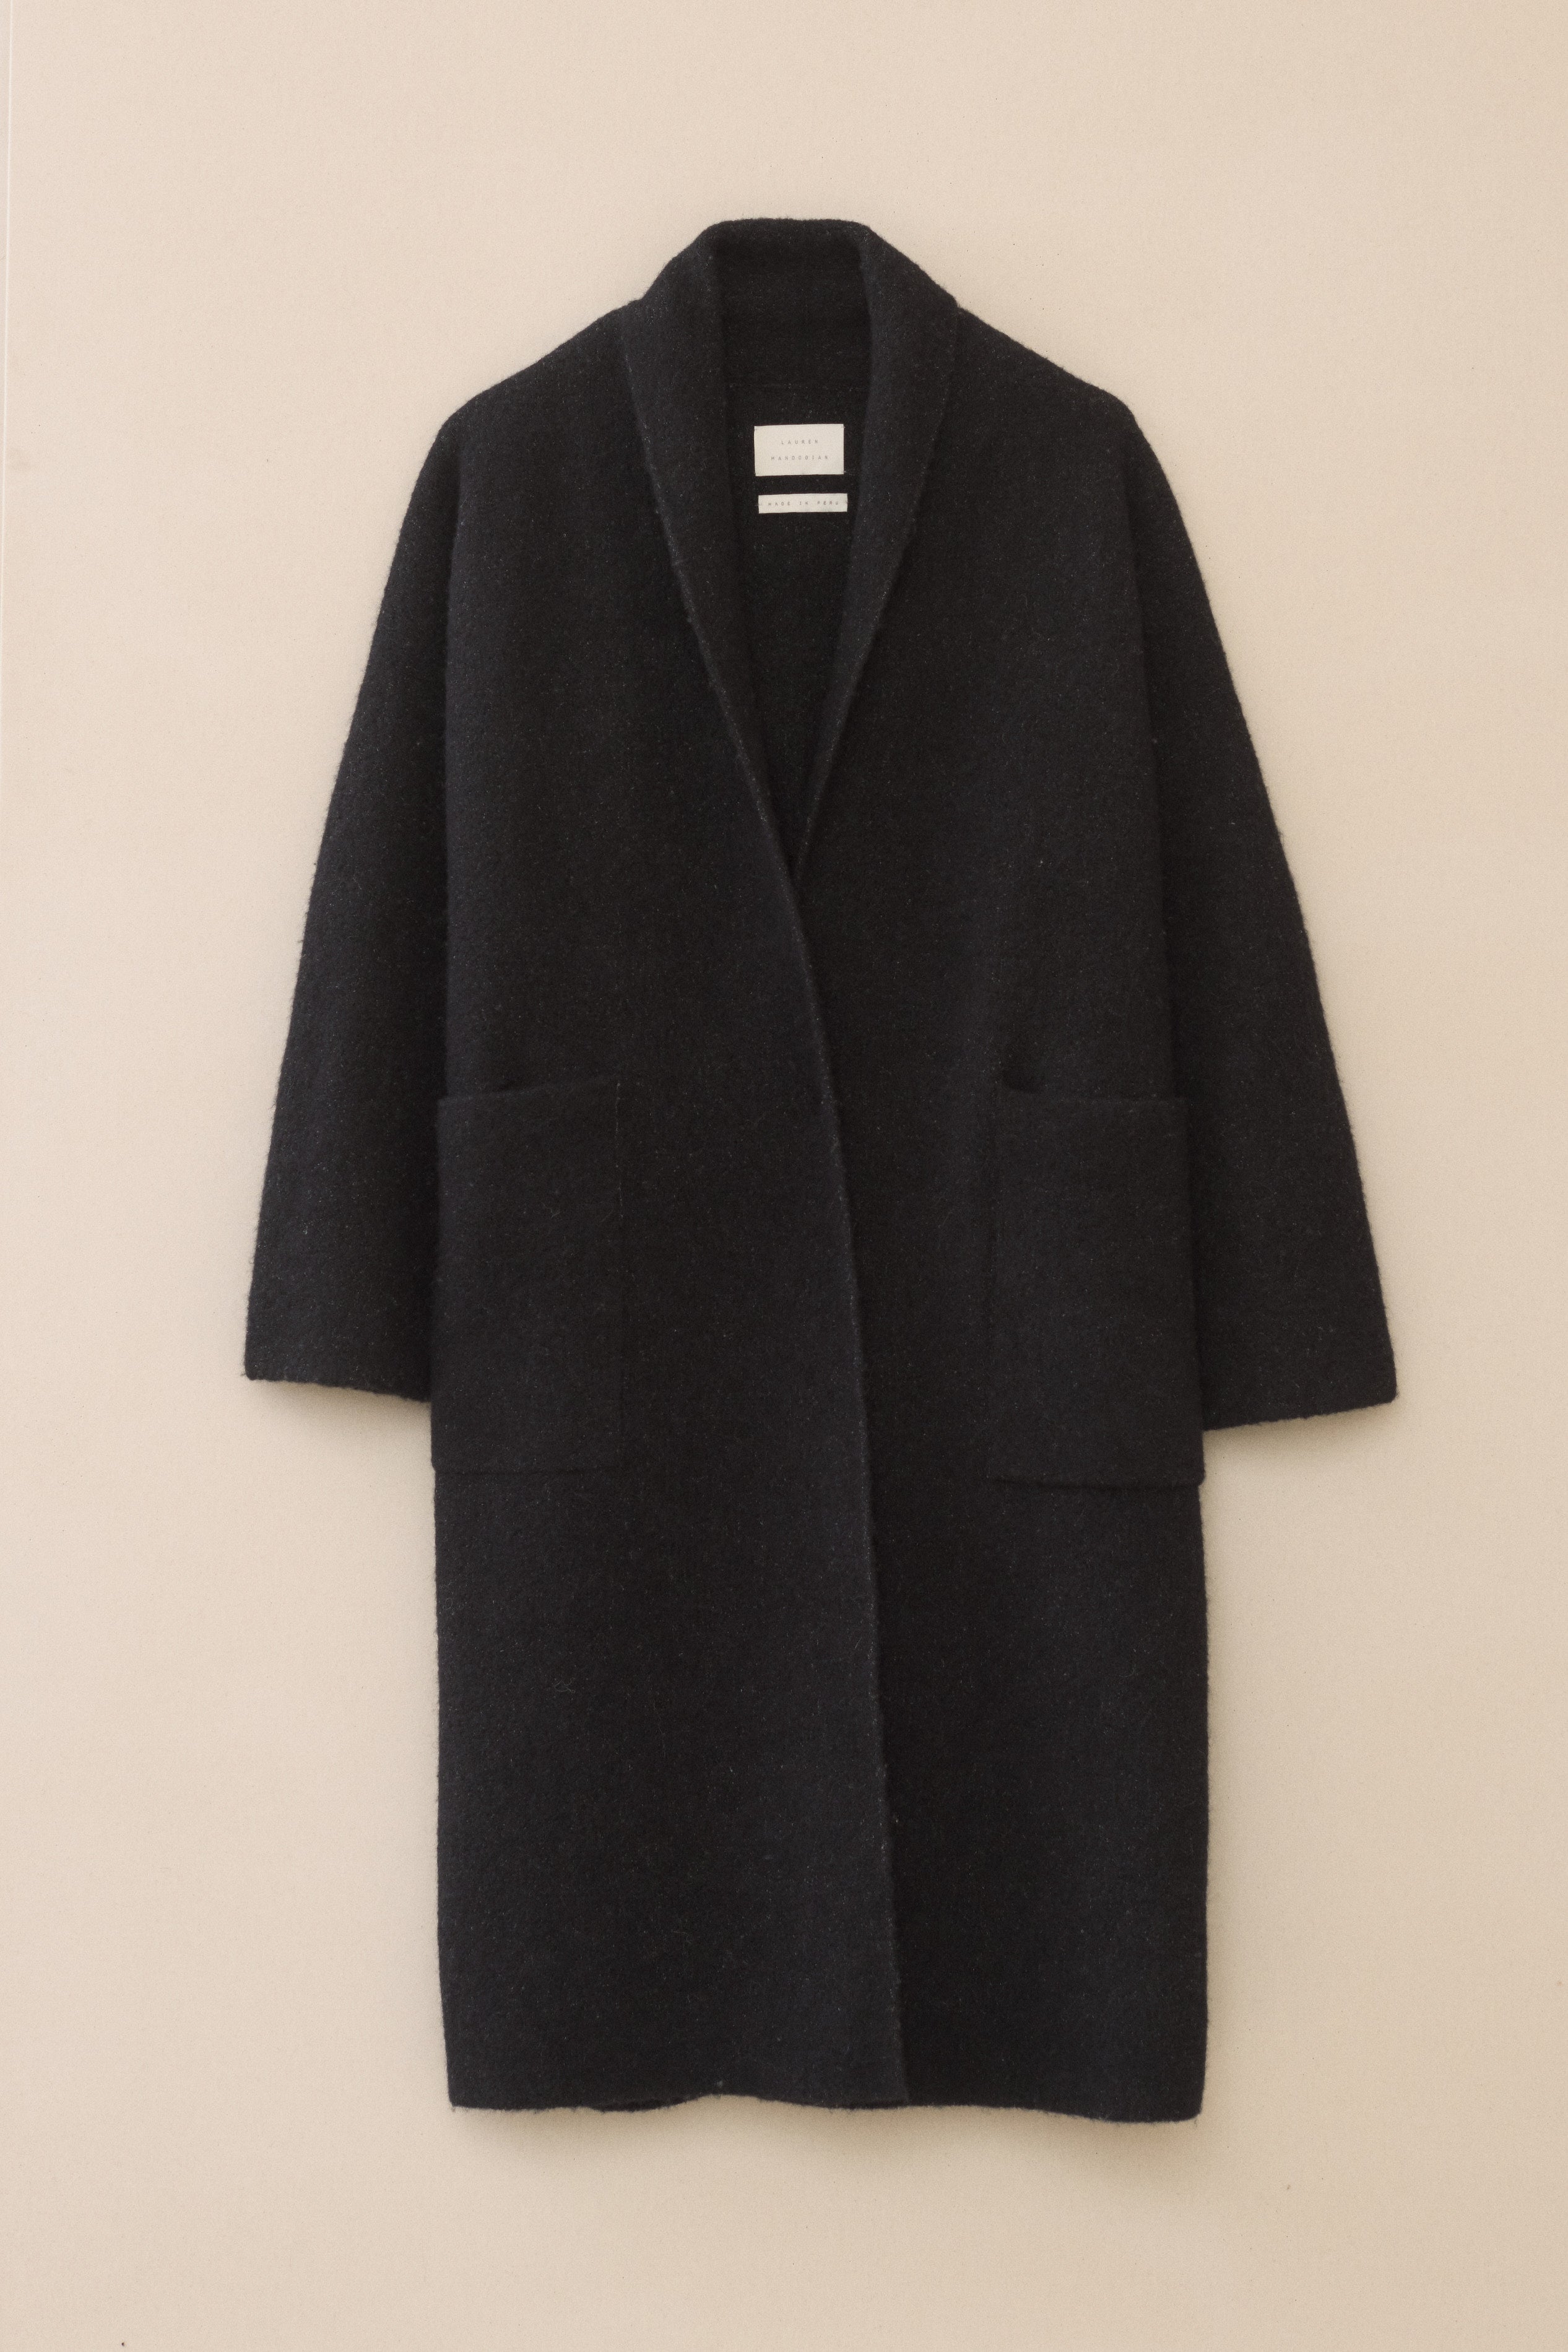 Plus-Size Women's Lauren Ralph Lauren Coats, Jackets & Blazers